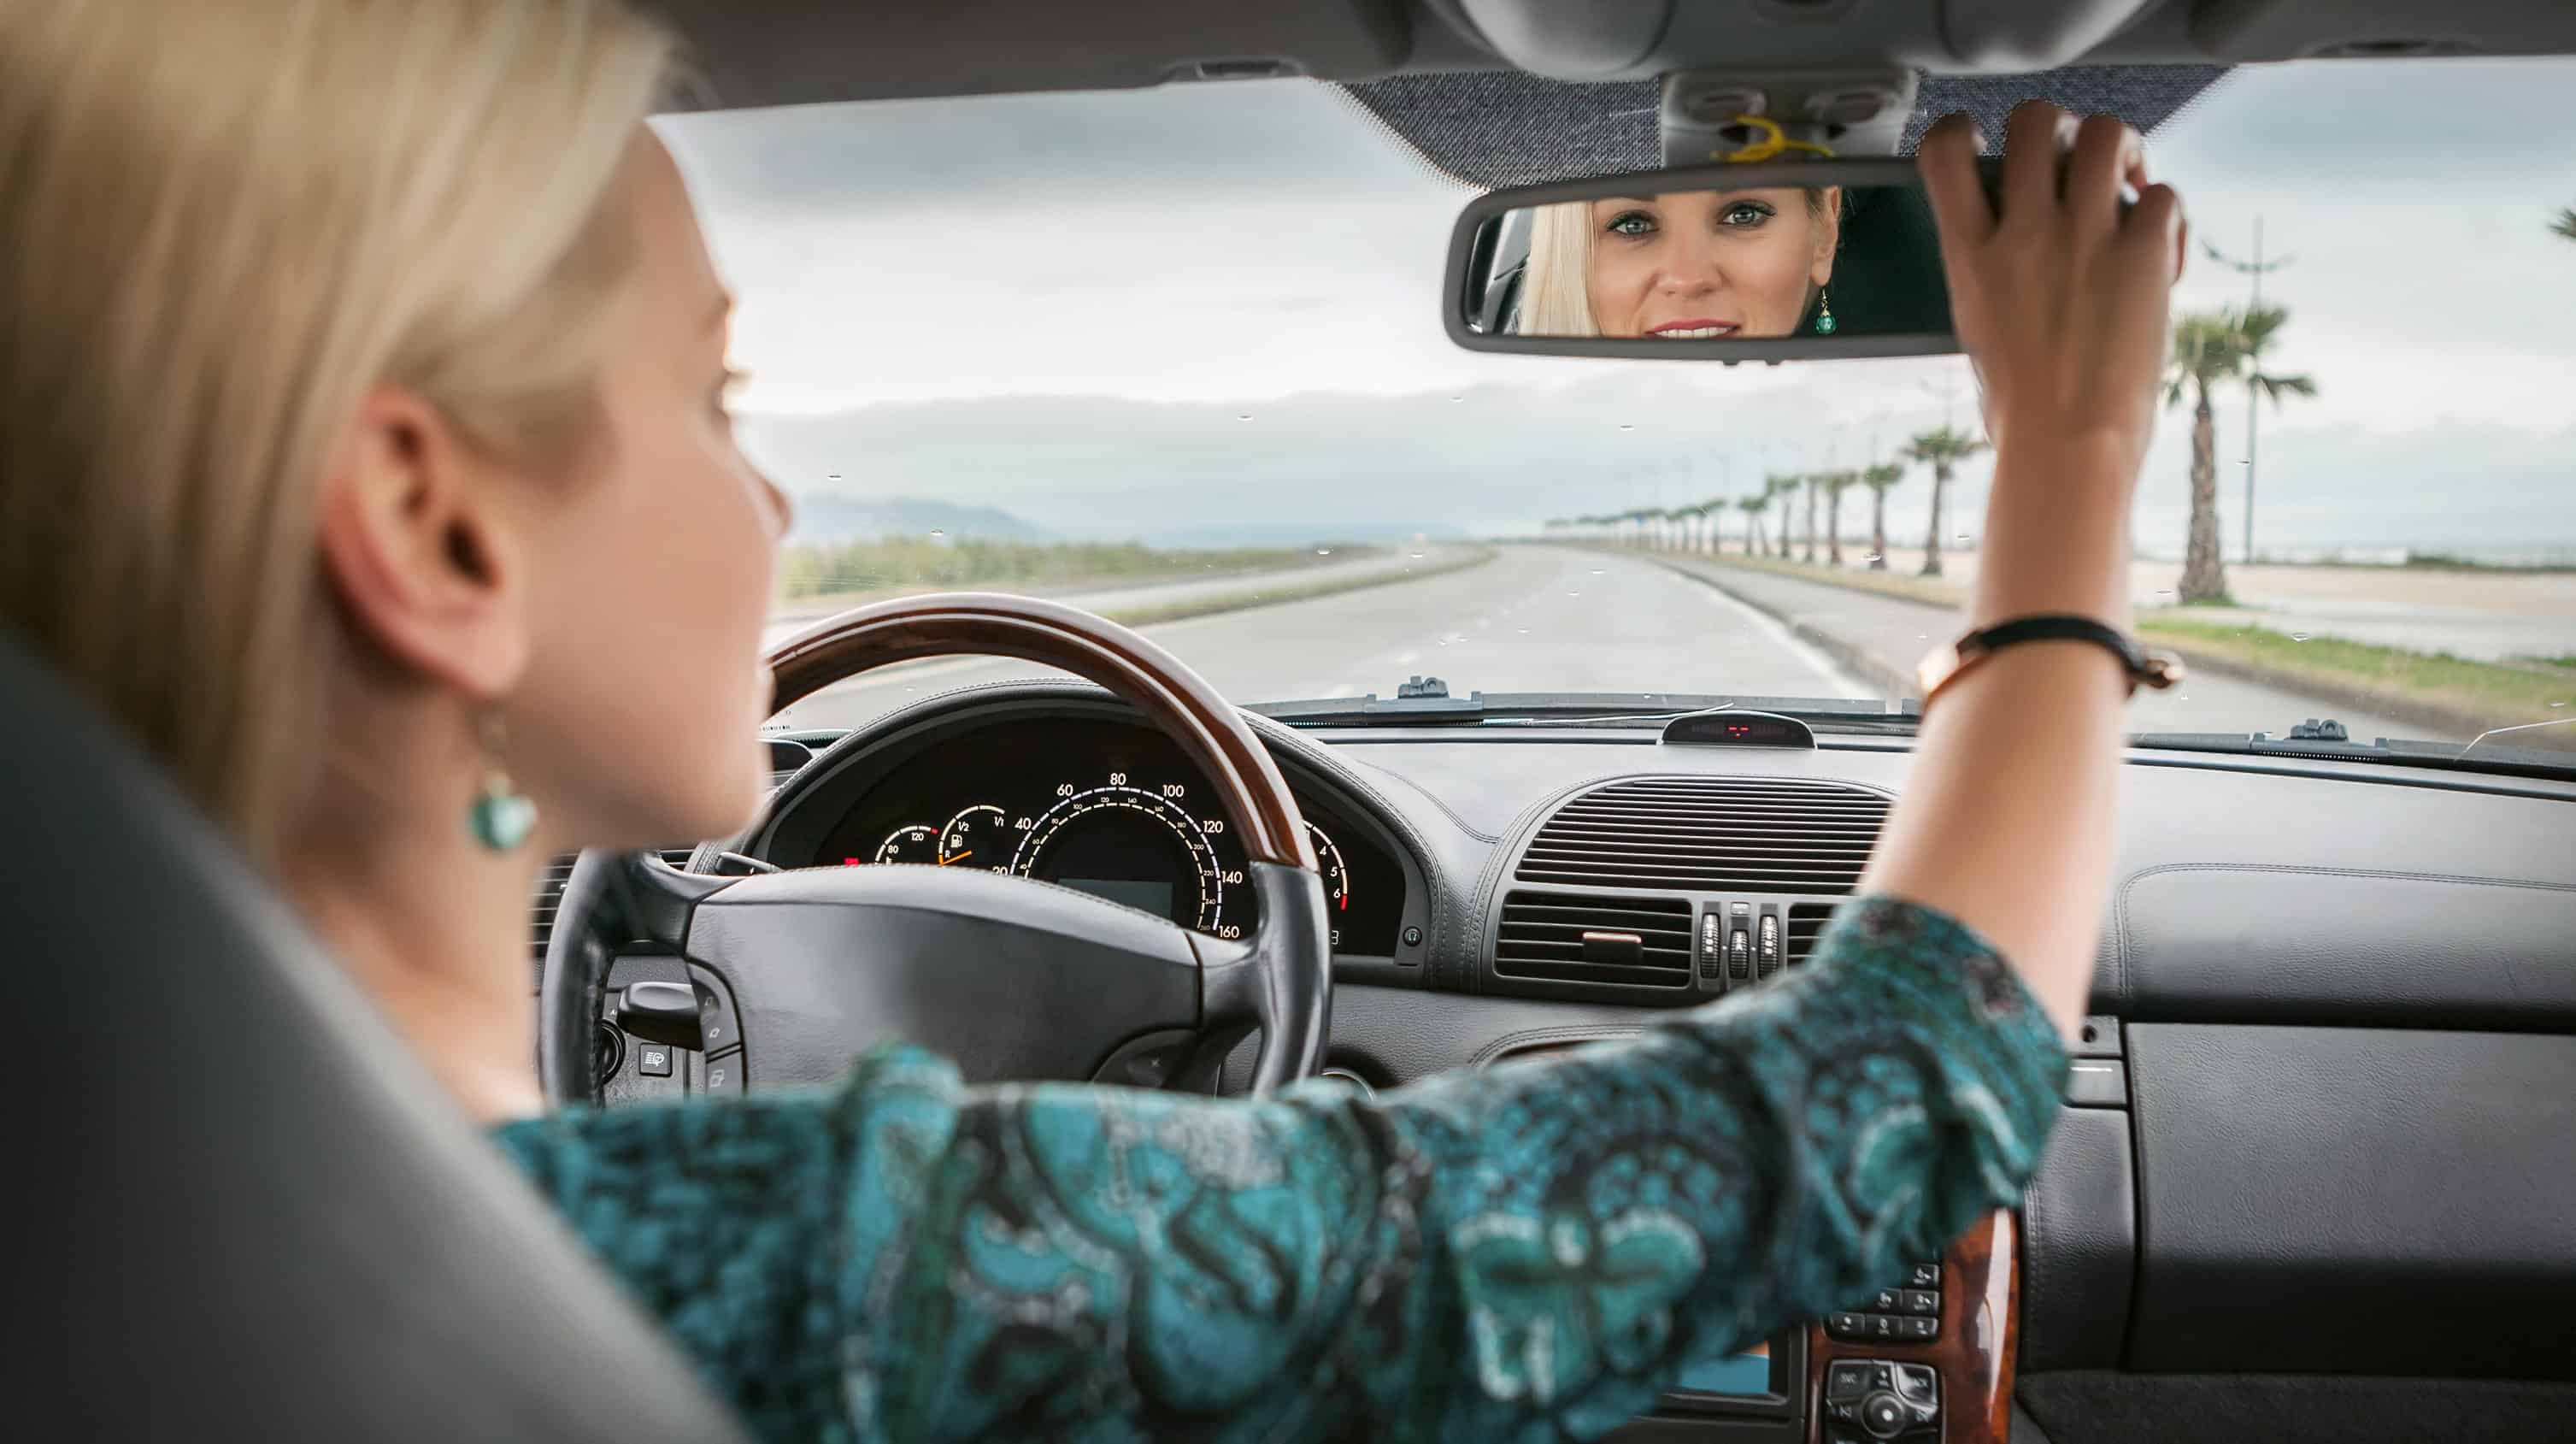 Водитель смотрит в зеркало. Девушка в зеркале машины. Женщина зеркало автомобиль. Девушка в зеркале машина блондинка. Девушка смотрит в зеркало в машине.